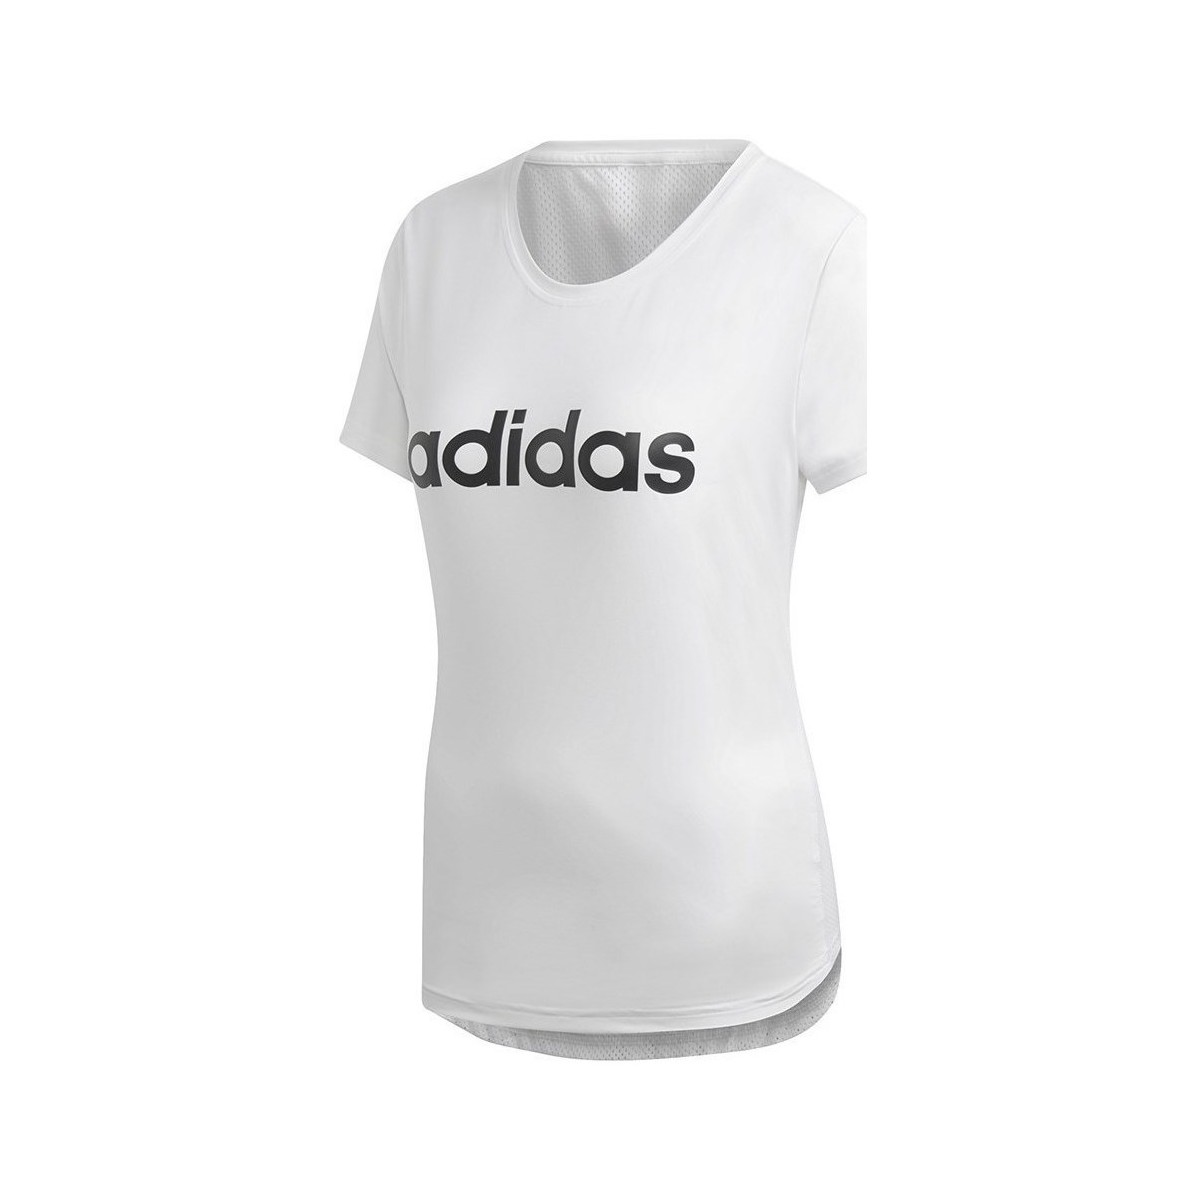 Kleidung Damen T-Shirts adidas Originals D2M Logo Tee Weiss